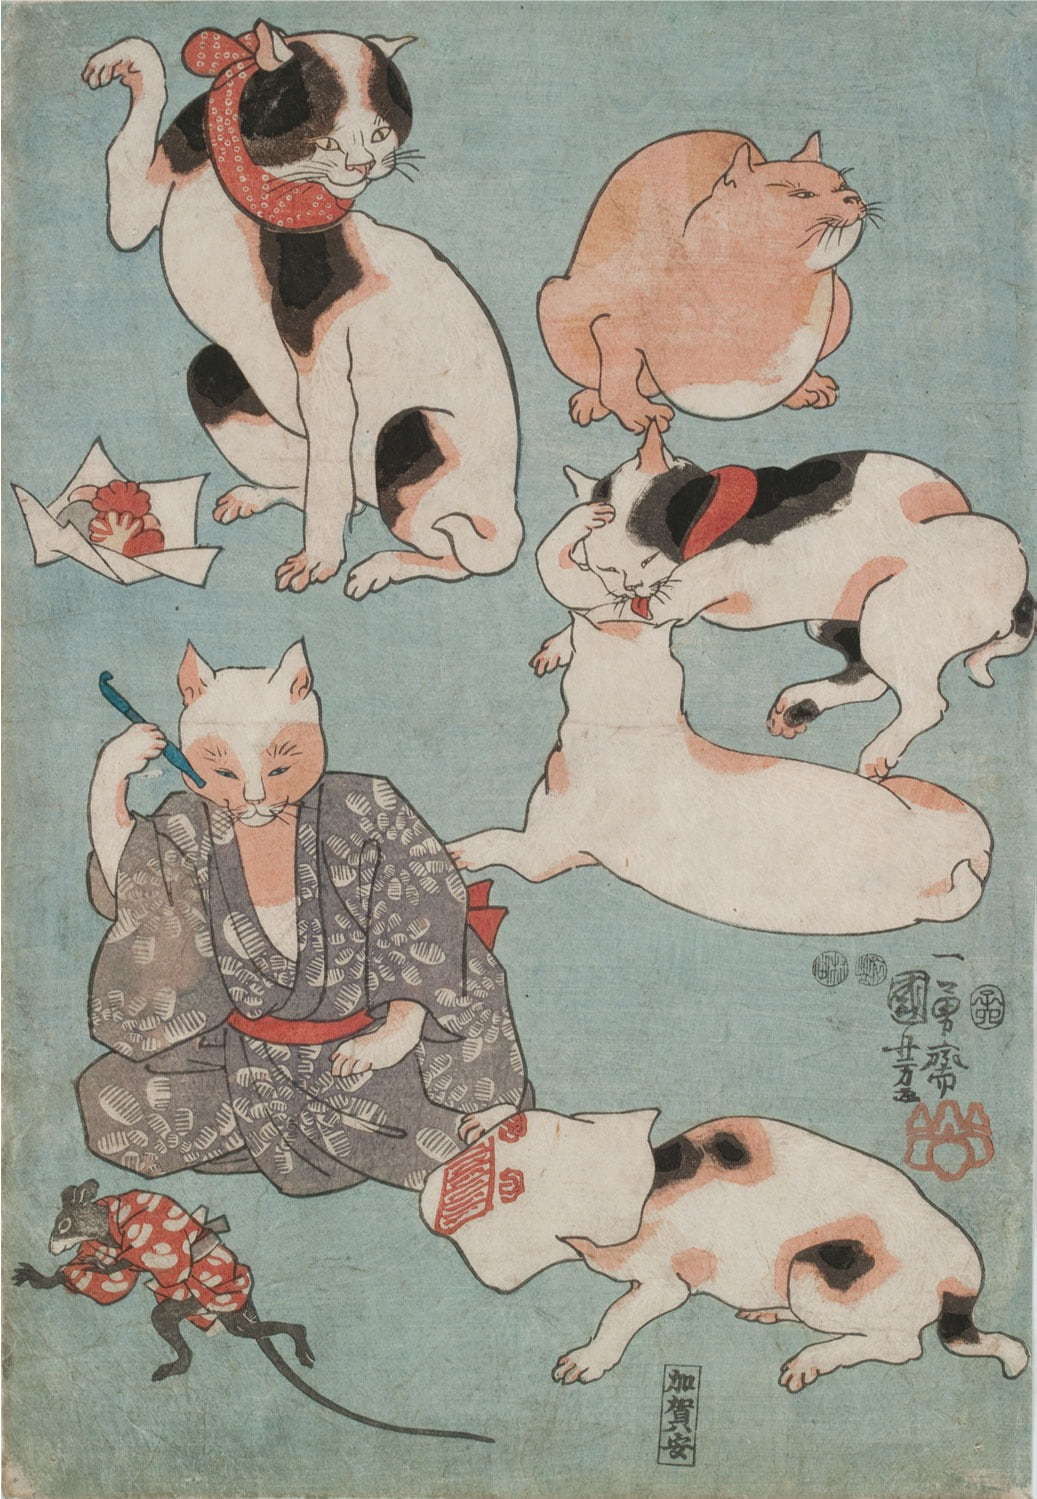 いつだって猫展」仙台市博物館で、江戸時代の猫ブームを歌川国芳らの